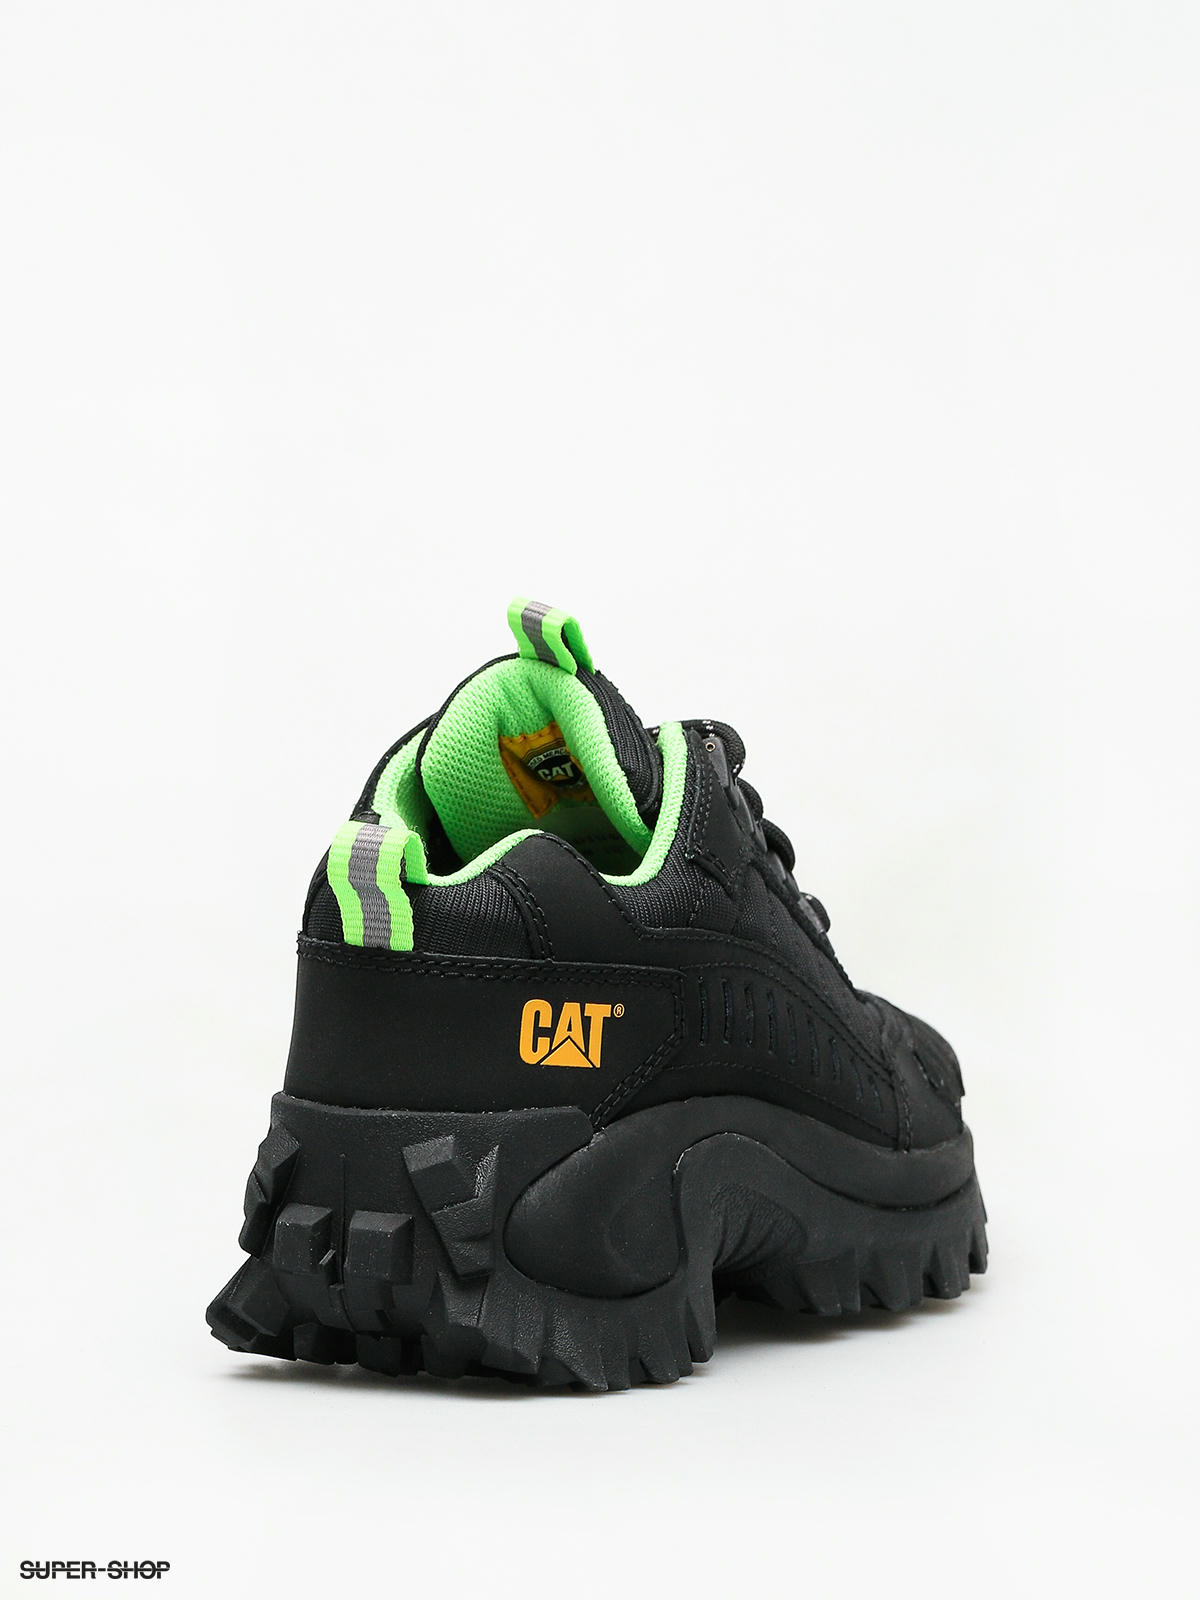 caterpillar intruder shoes